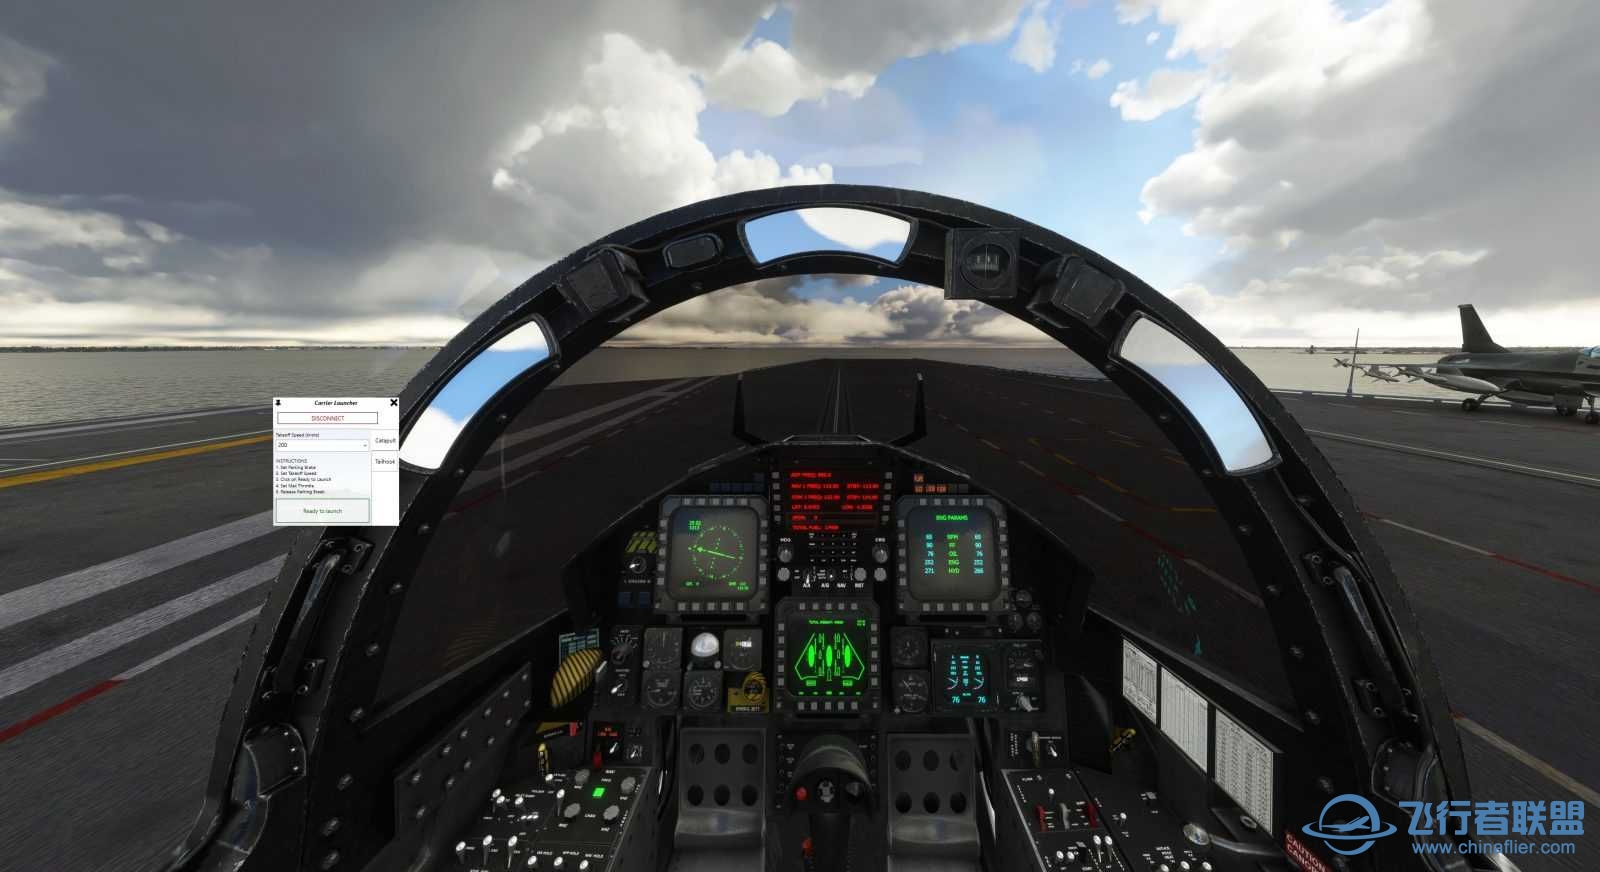 Miltech Simulations 发布美国乔治·H·W·布什航空母舰-3131 